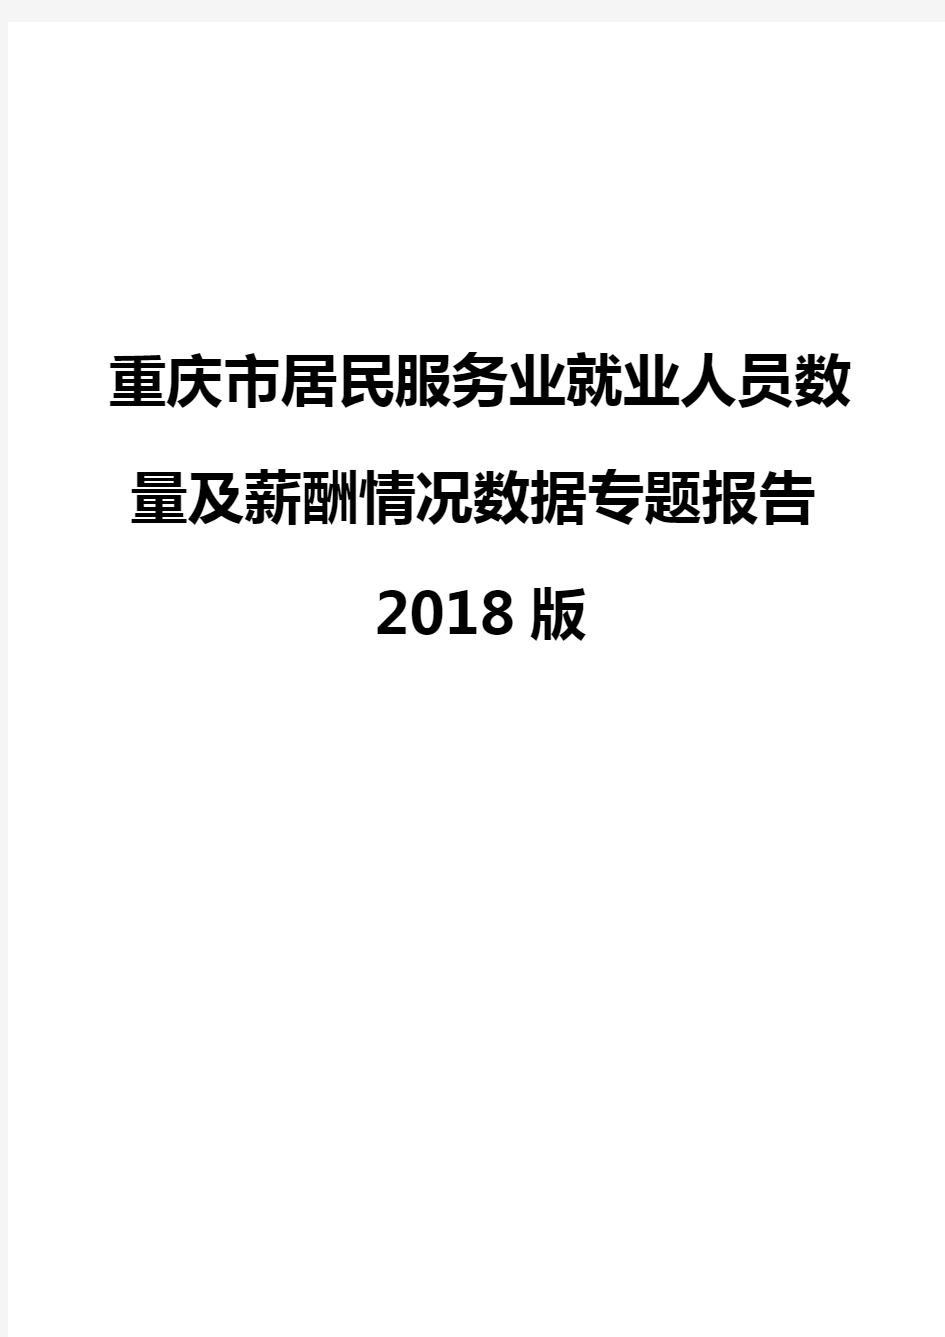 重庆市居民服务业就业人员数量及薪酬情况数据专题报告2018版